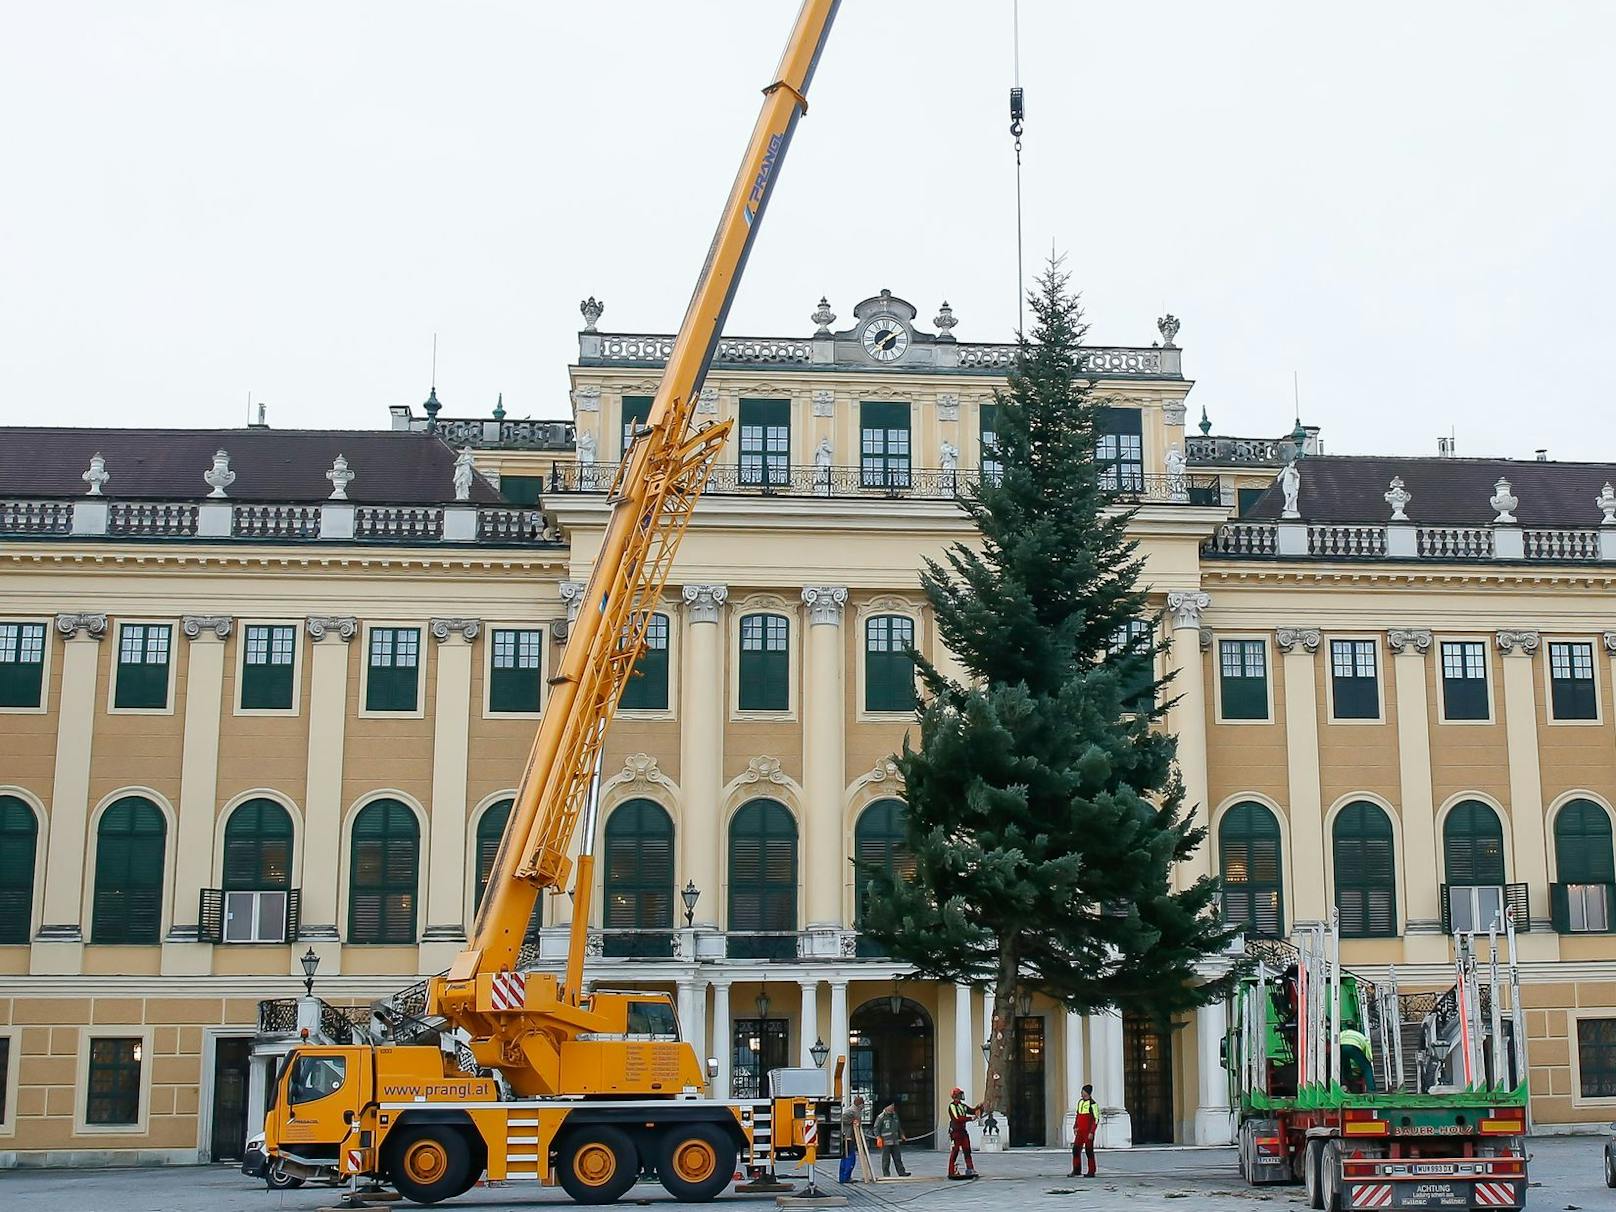 Für den Christkindlmarkt in Schönbrunn wurde eine 18 Meter hohe Tanne aufgestellt. Ihren vorweihnachtlichen Lichterzauber verströmt sie ab 20. November bis zum 26. Dezember im Ehrenhof.